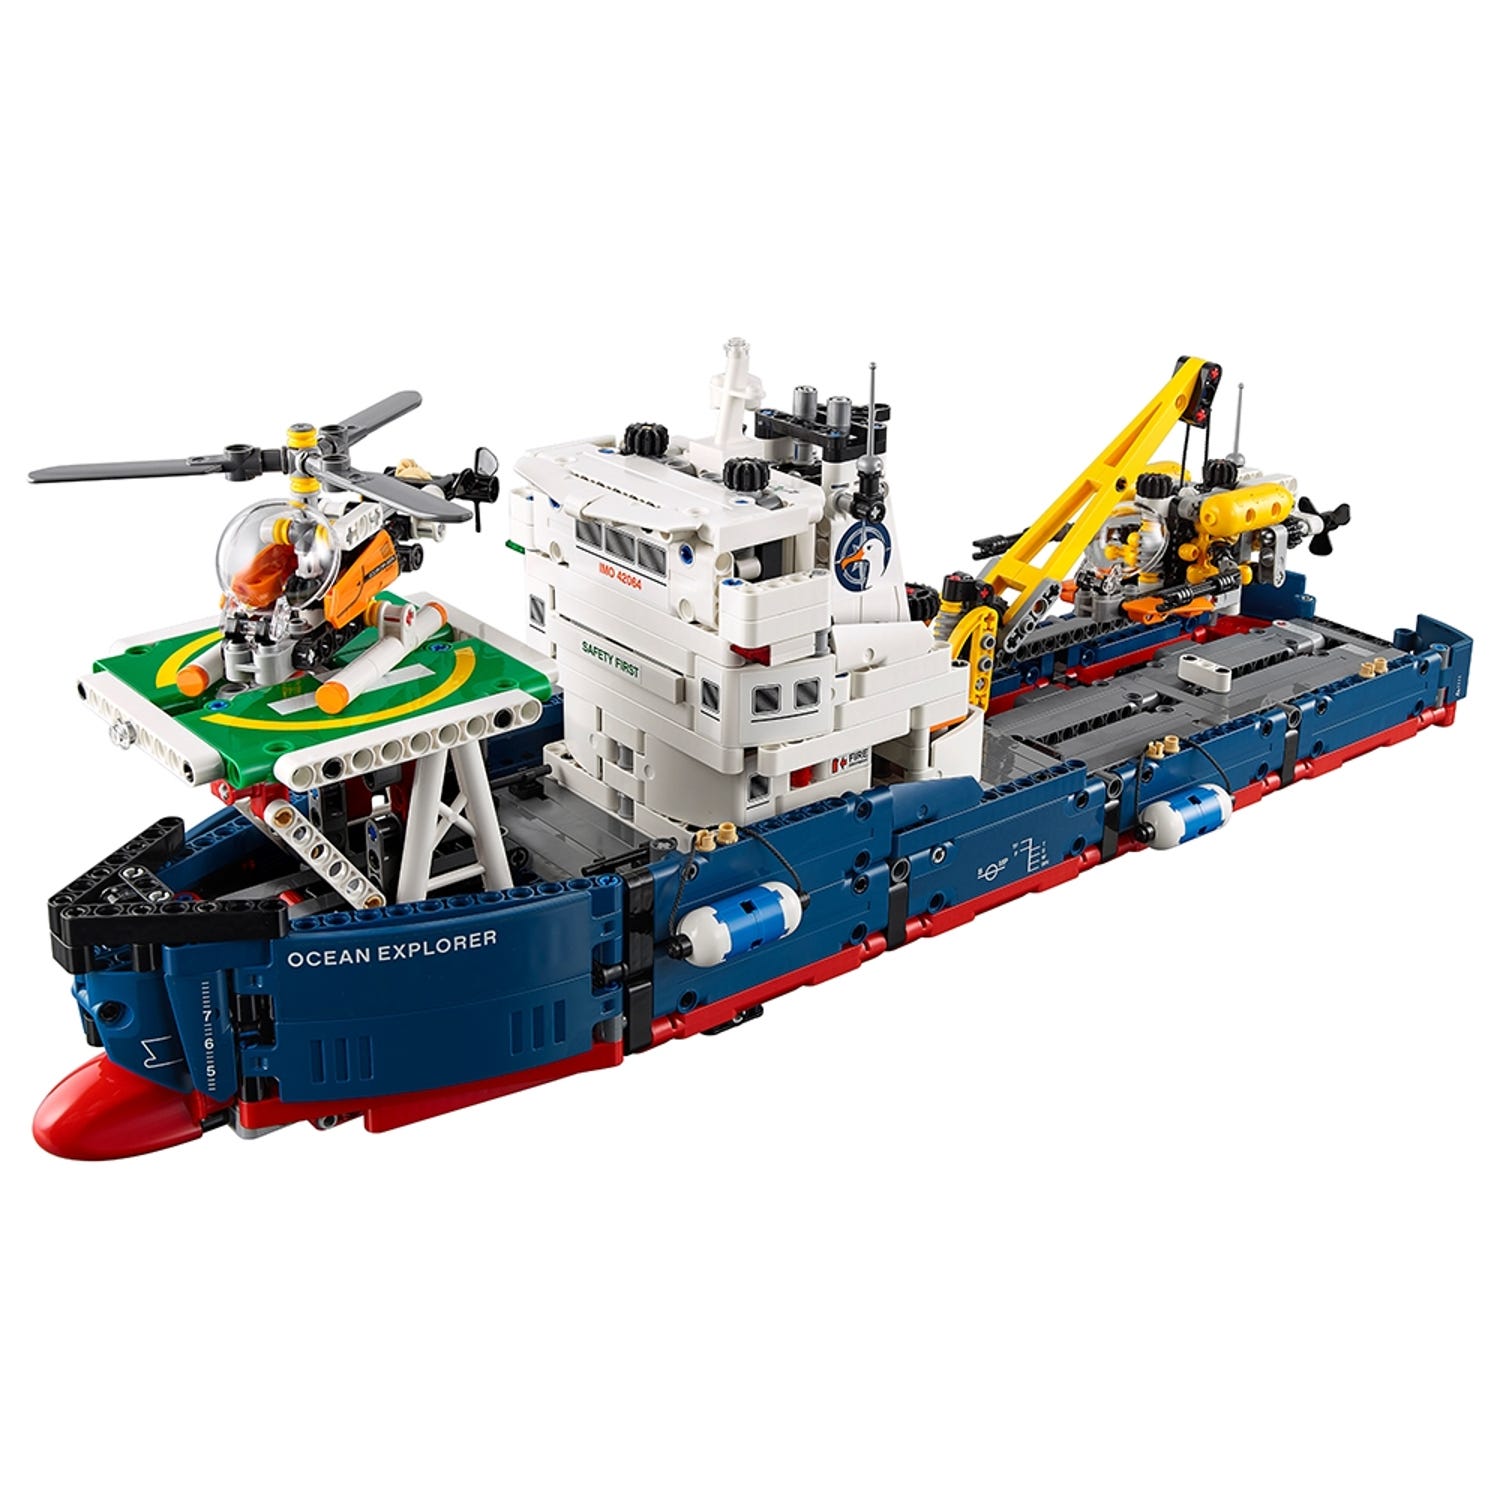 Understrege nærme sig flåde Forskningsskib 42064 | Technic | Officiel LEGO® Shop DK